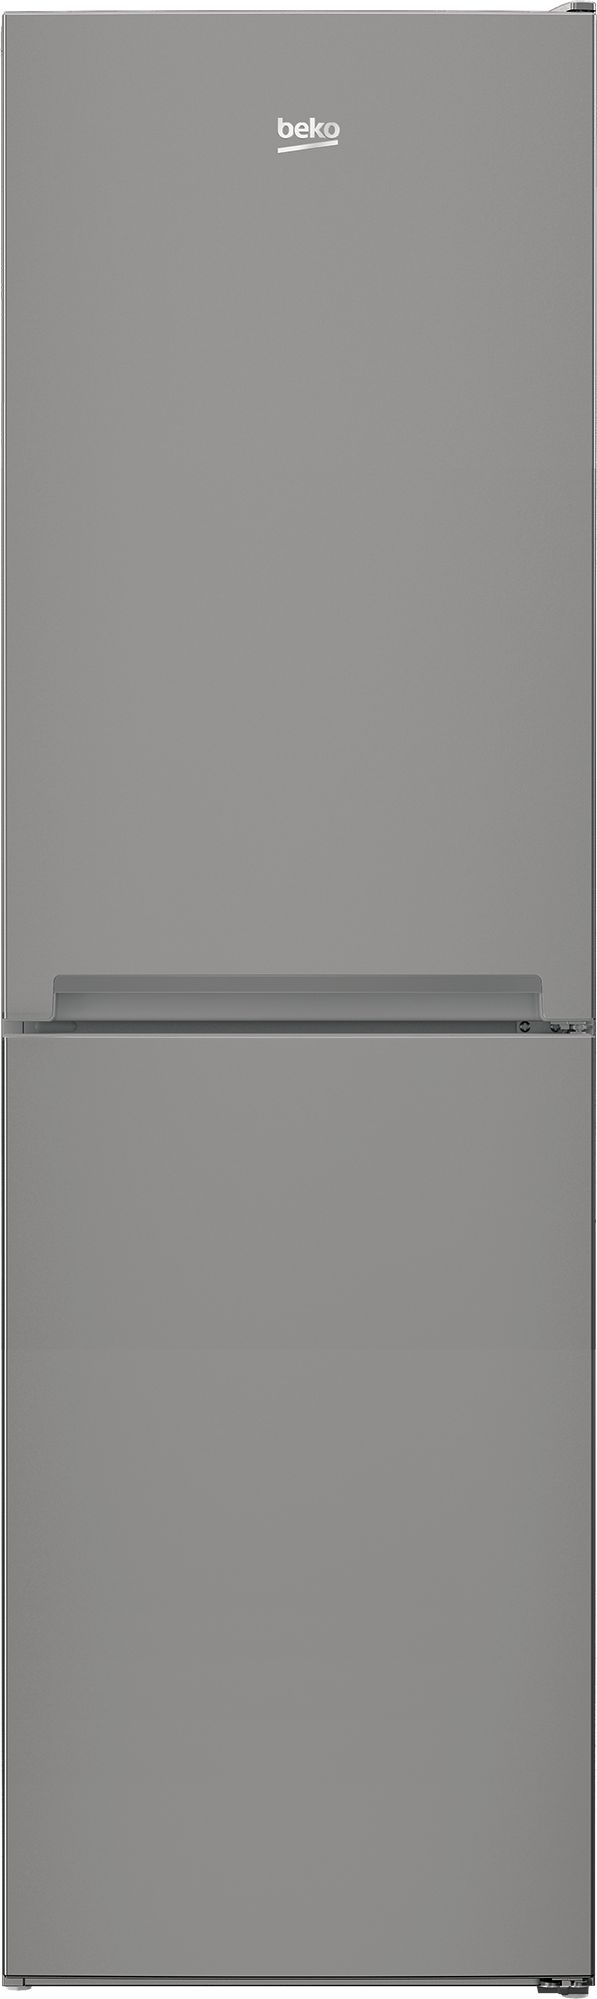 Beko CSG4582S 50/50 Fridge Freezer - Silver - E Rated, Silver